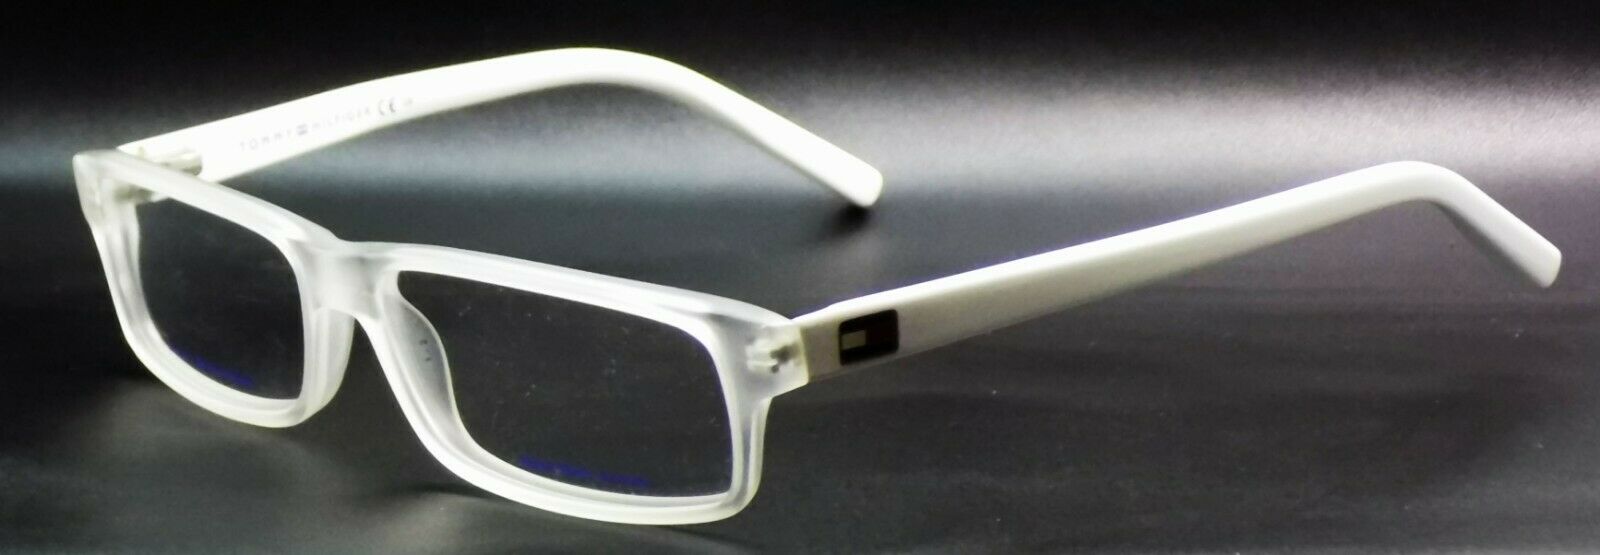 1-TOMMY HILFIGER TH 1061 HKN Women's Eyeglasses Frames 54-14-140 Crystal / White-827886994205-IKSpecs